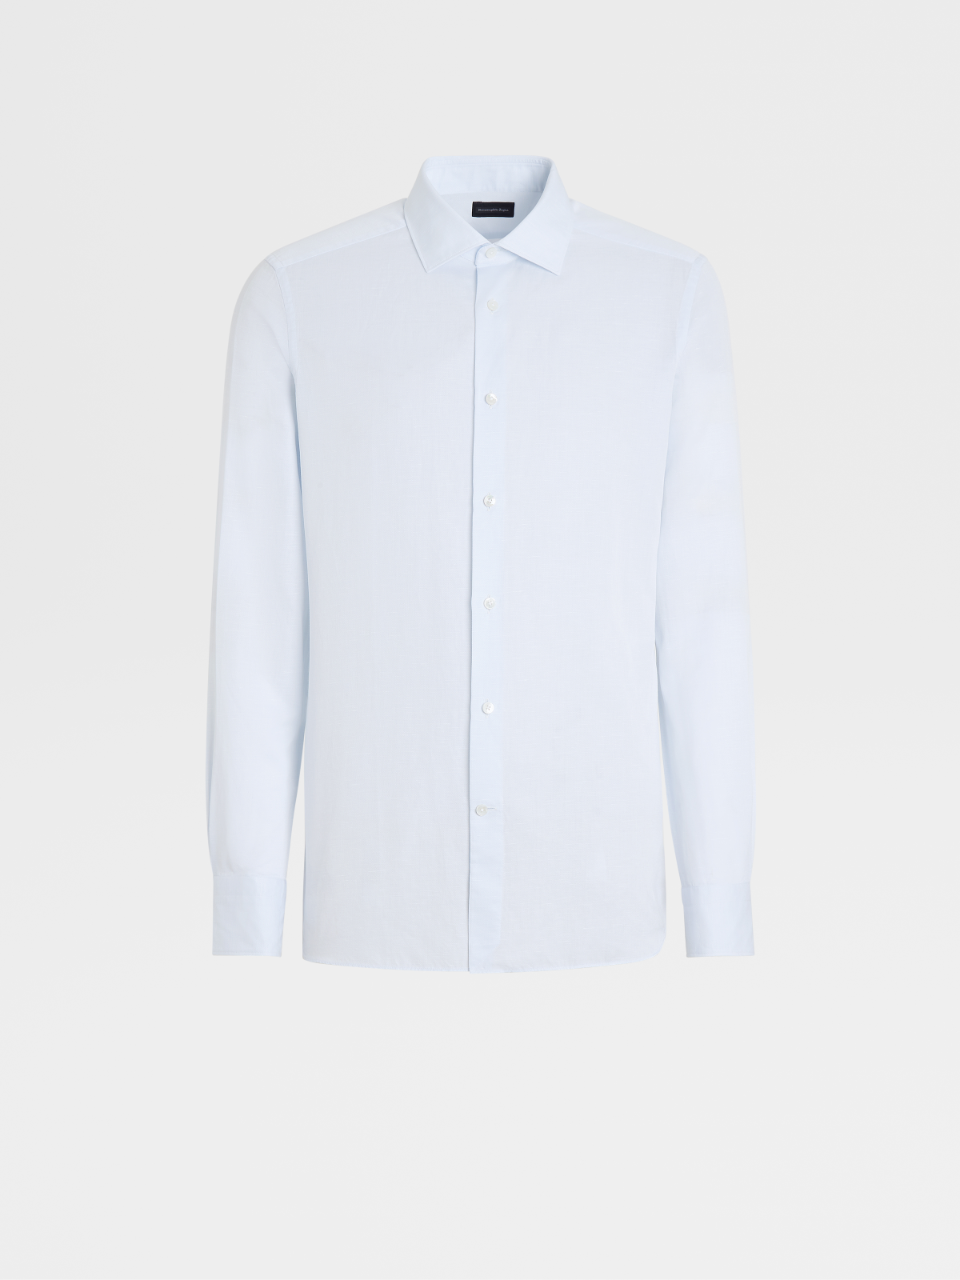 浅蓝色成衣水洗棉质亚麻精裁衬衫，Milano 合身版型